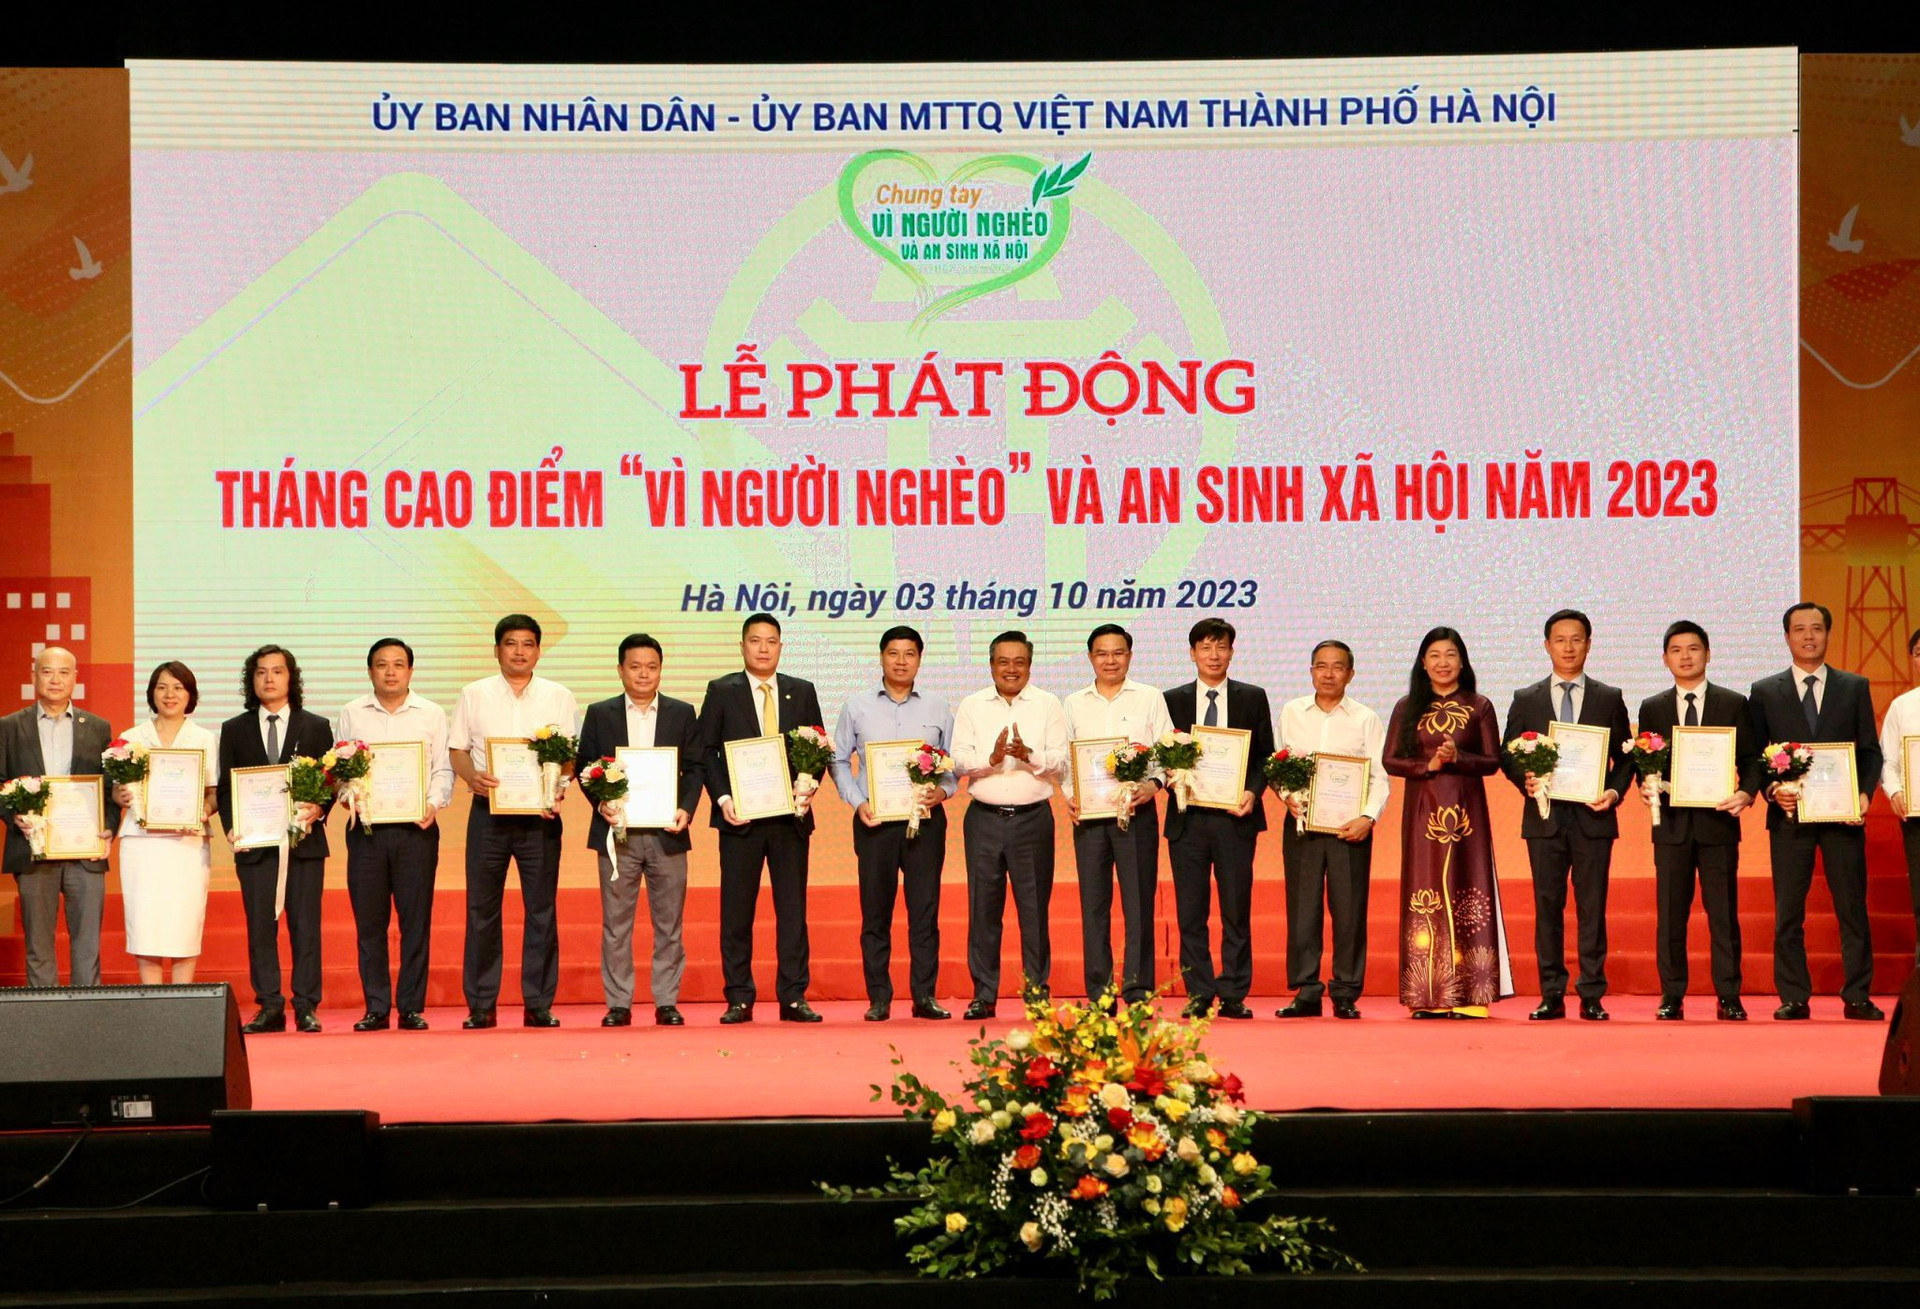 Lãnh đạo thành phố Hà Nội vinh danh các tổ chức, doanh nghiệp và cá nhân ủng hộ Quỹ Vì người nghèo.